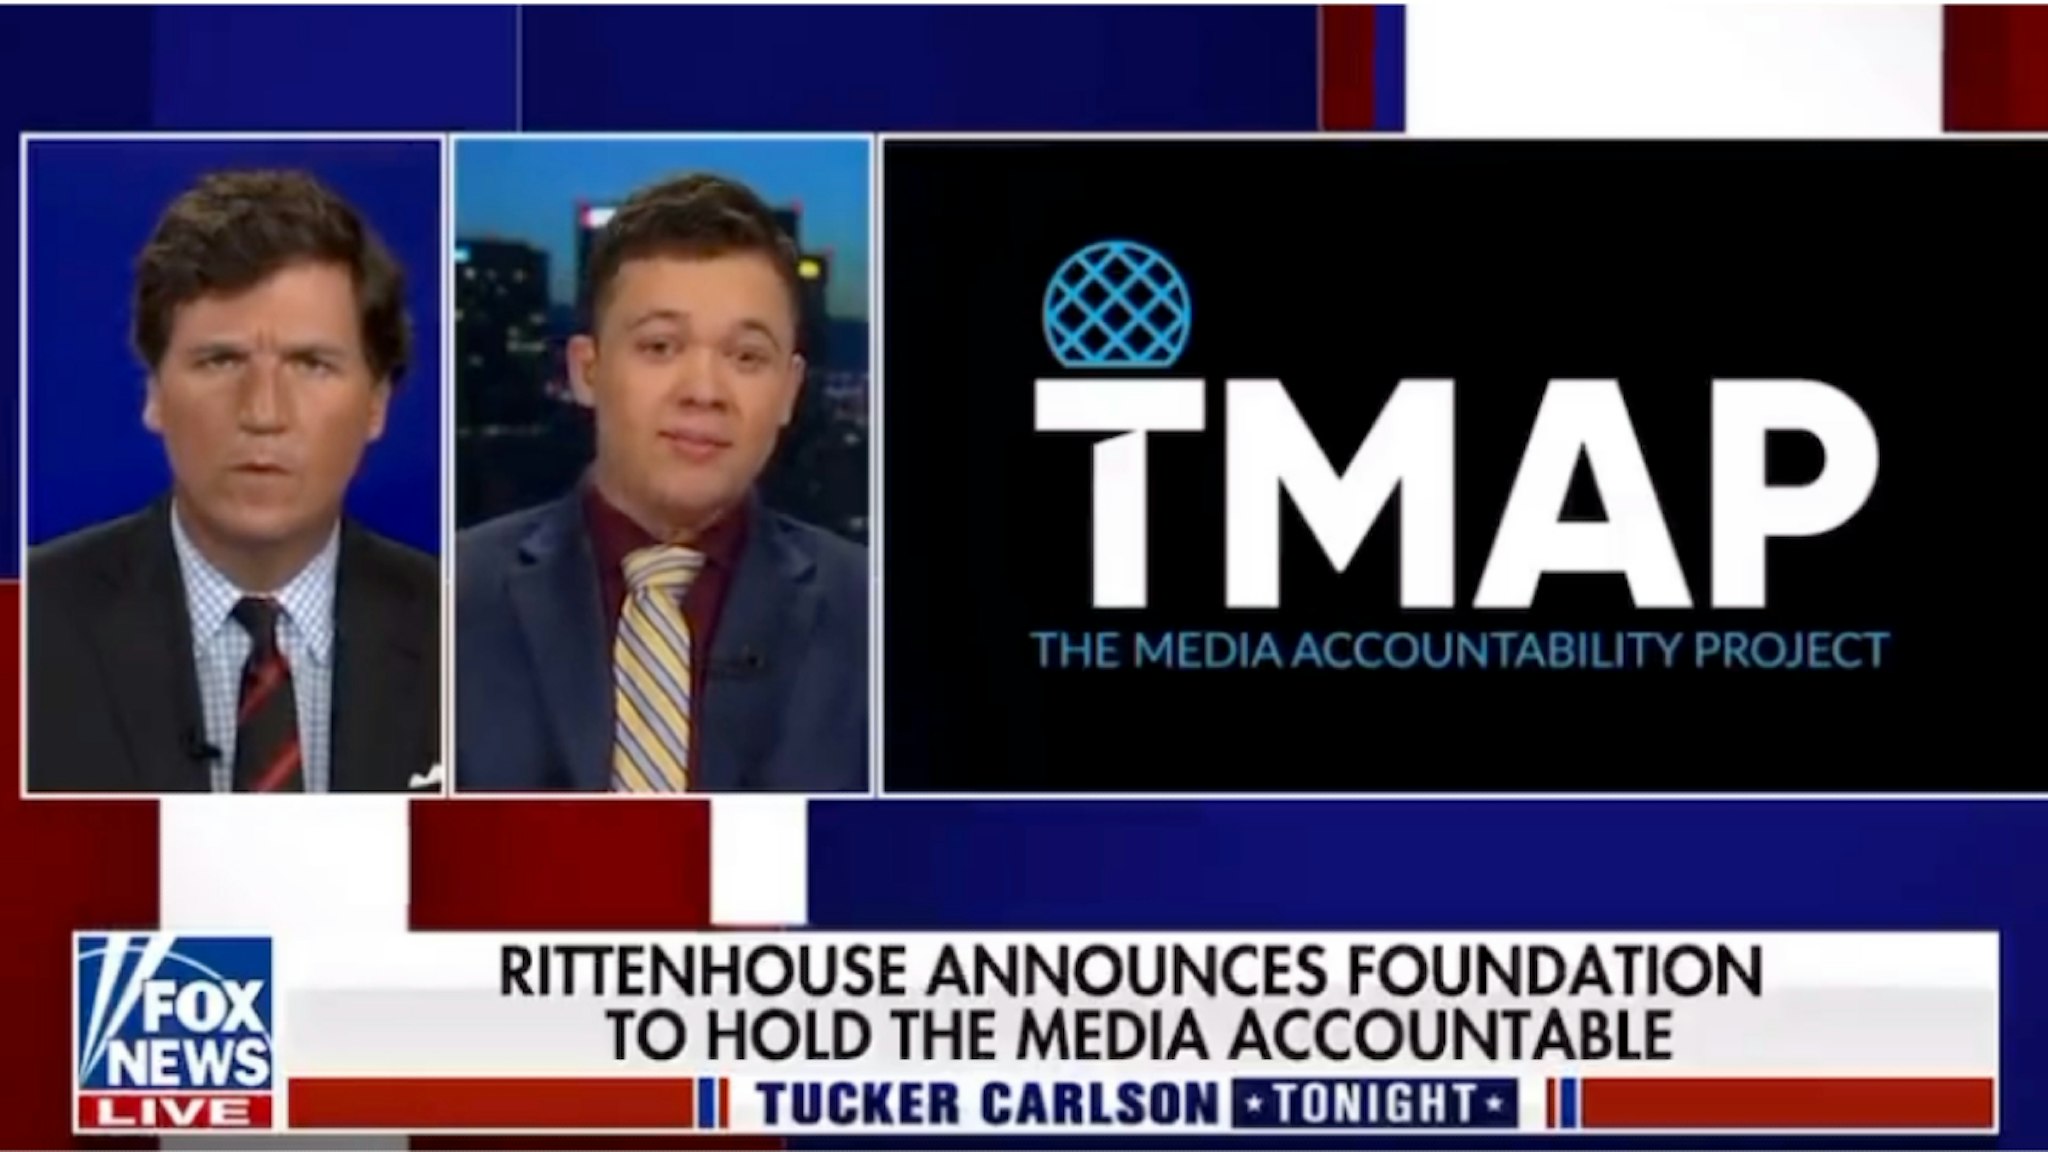 Kyle Rittenhouse on FOx News' "Tucker Carlson Tonight"